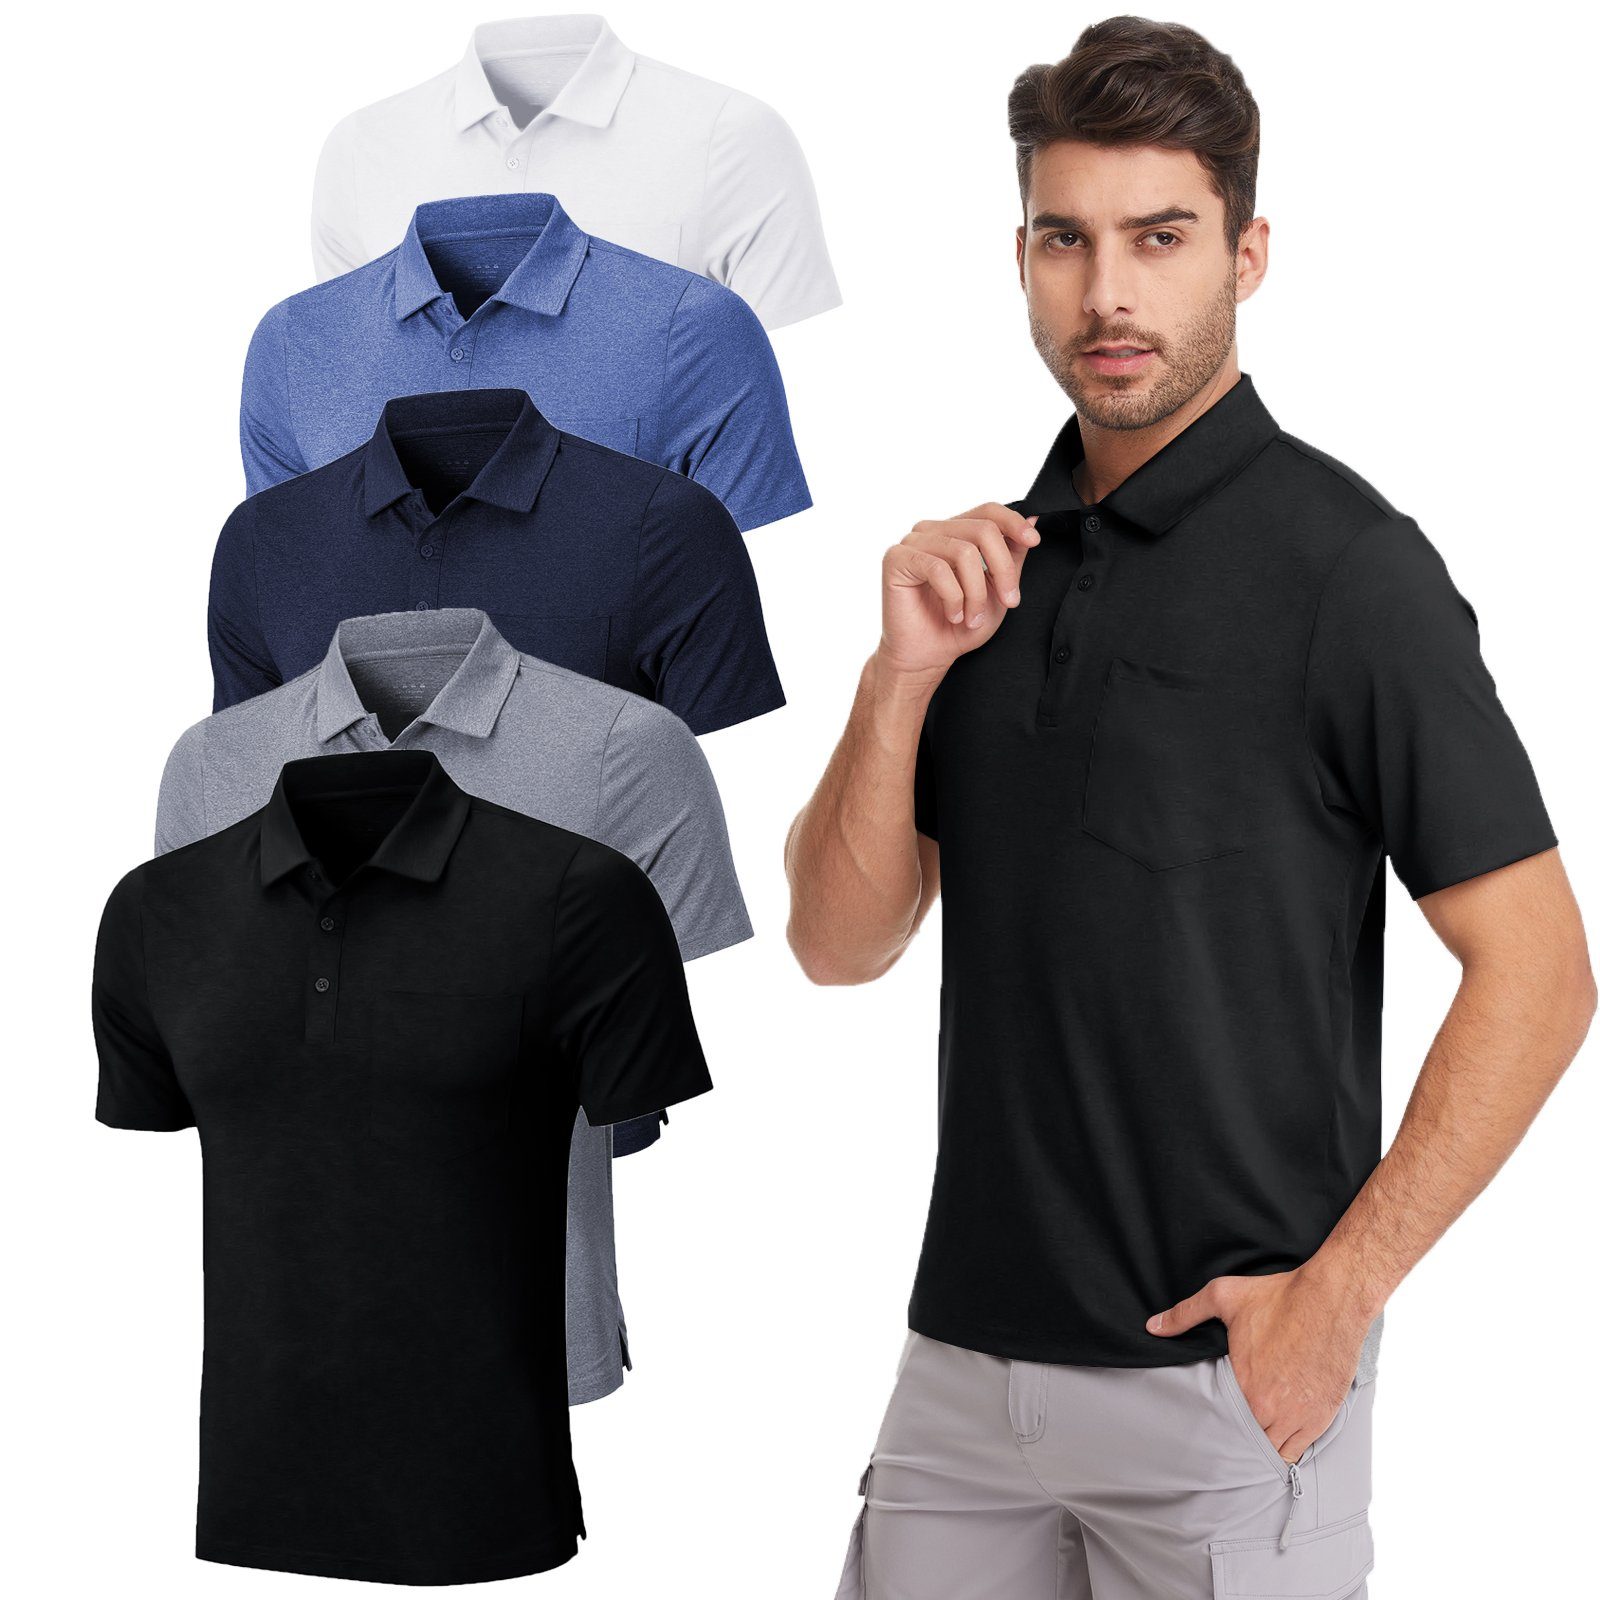 MEETYOO Poloshirt (Kurzarm Weiß Tee Casual, Polohemd T-Shirt, Classic Hemd) Herren Atmungsaktiv Poloshirt Unifarben, Button-Down-Kragen